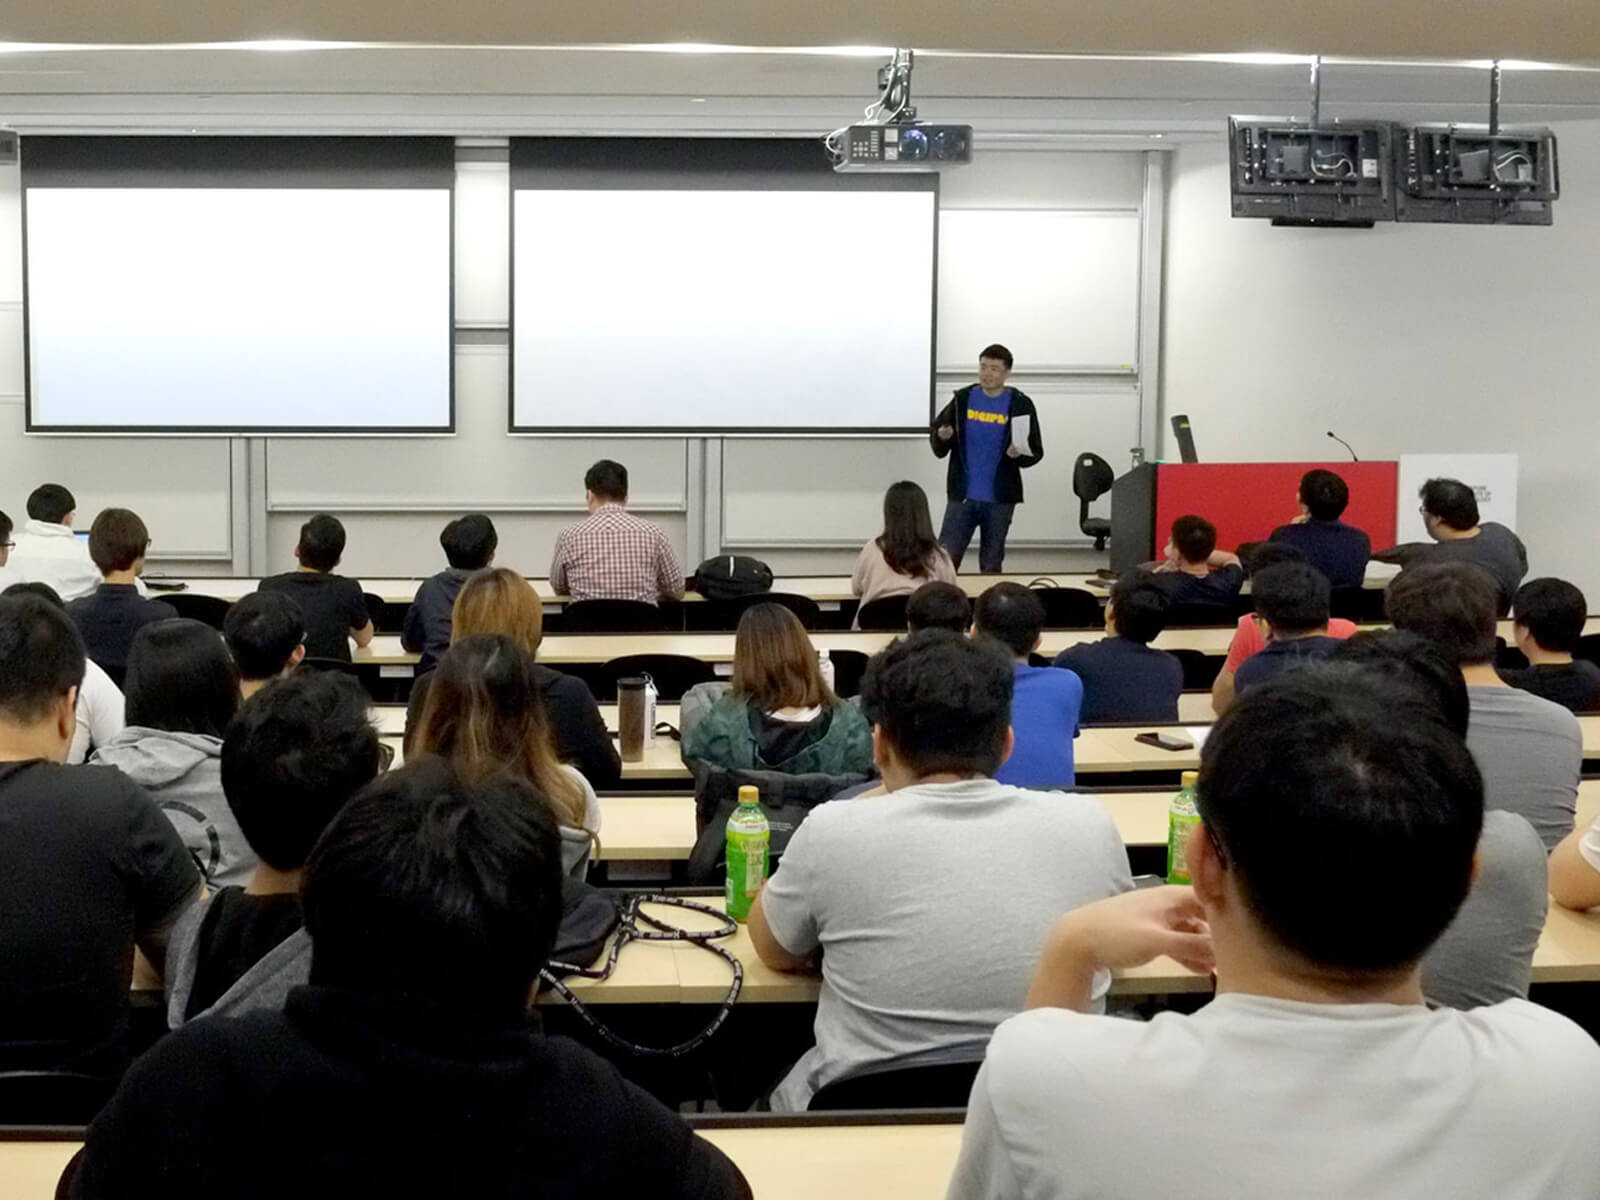 DigiPen (Singapore) BS in RTIS alumnus Tan Yao Wei speaks in front of a class